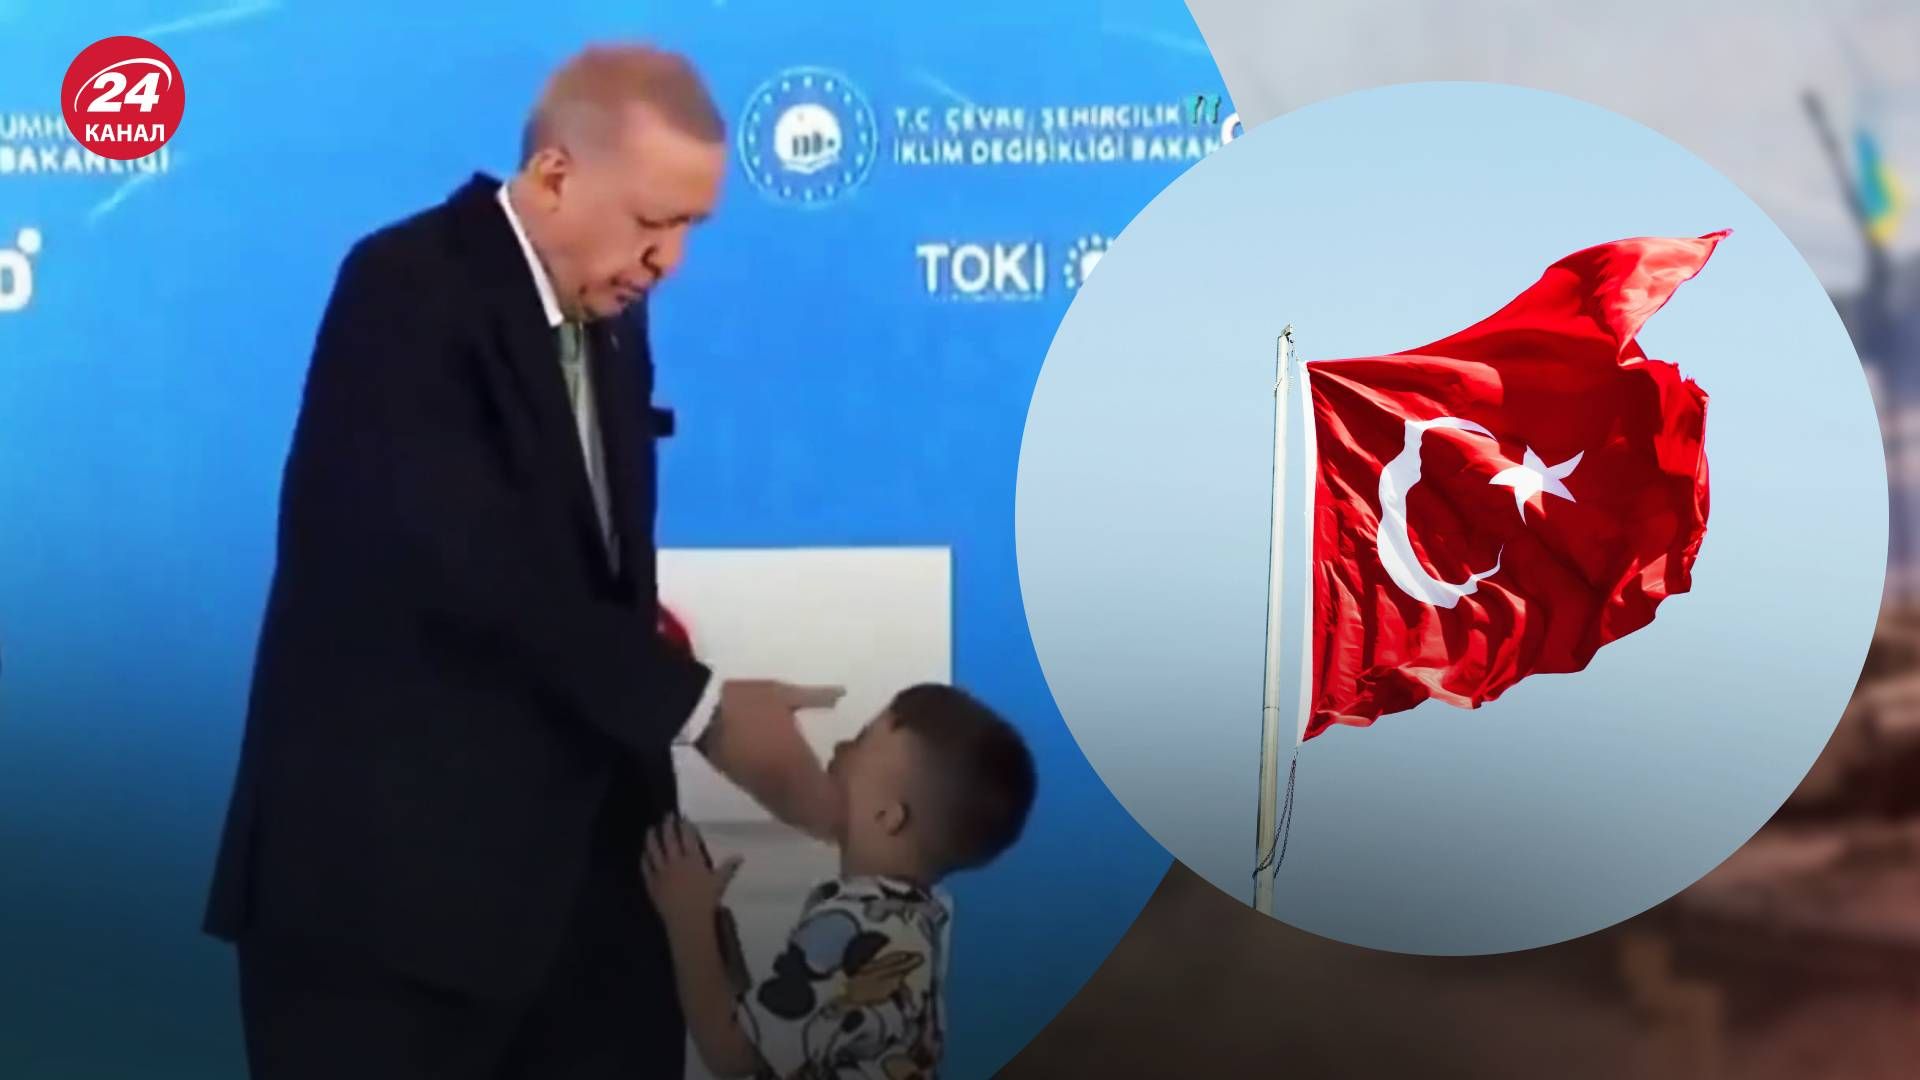 На официальной церемонии в Турции Эрдоган ударил ребенка - 24 Канал